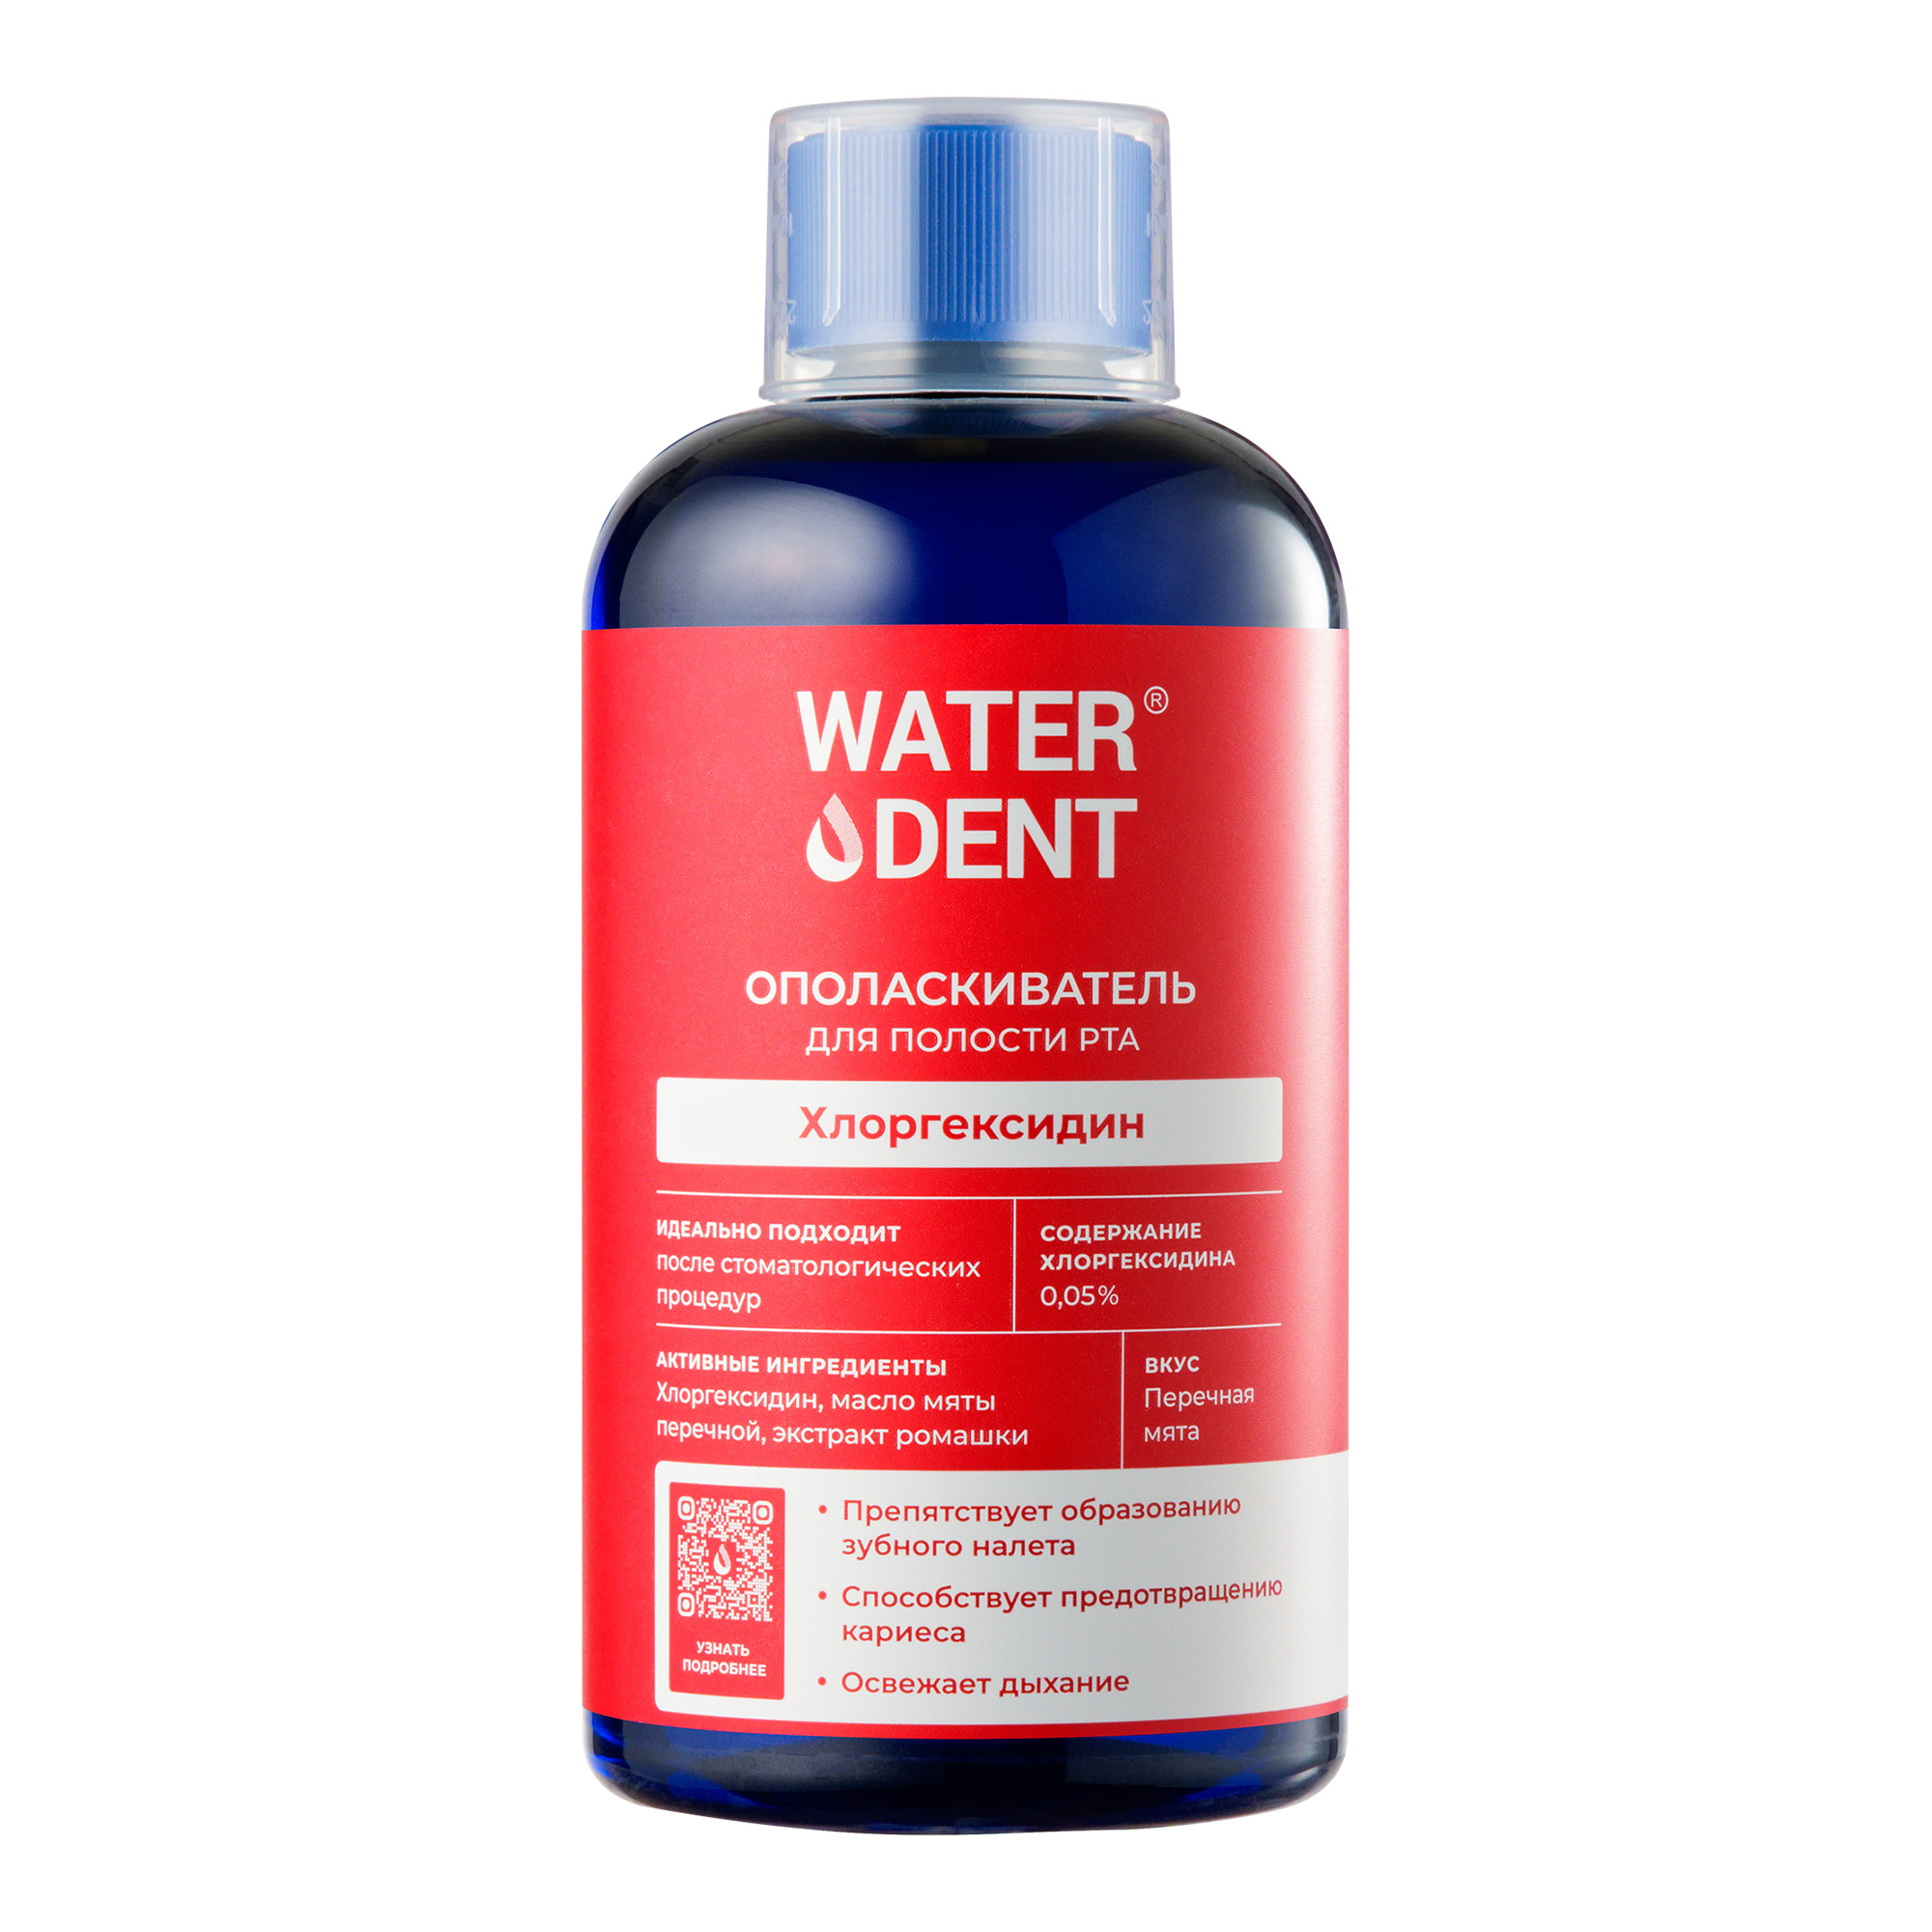 Waterdent, ополаскиватель для полости рта Хлоргексидин со вкусом мяты, 500 мл